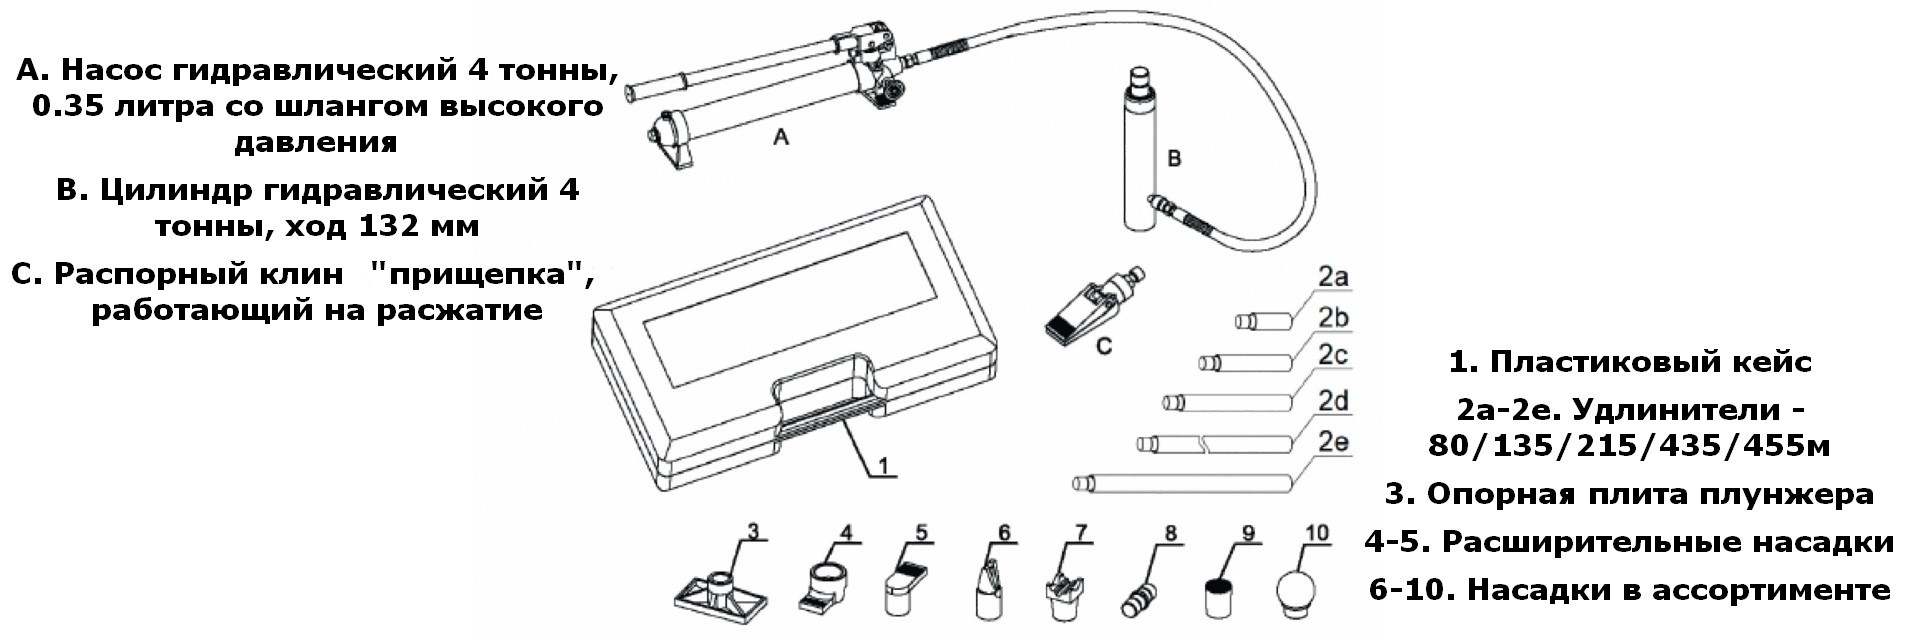 Комплектация набора гидравлического инструмента